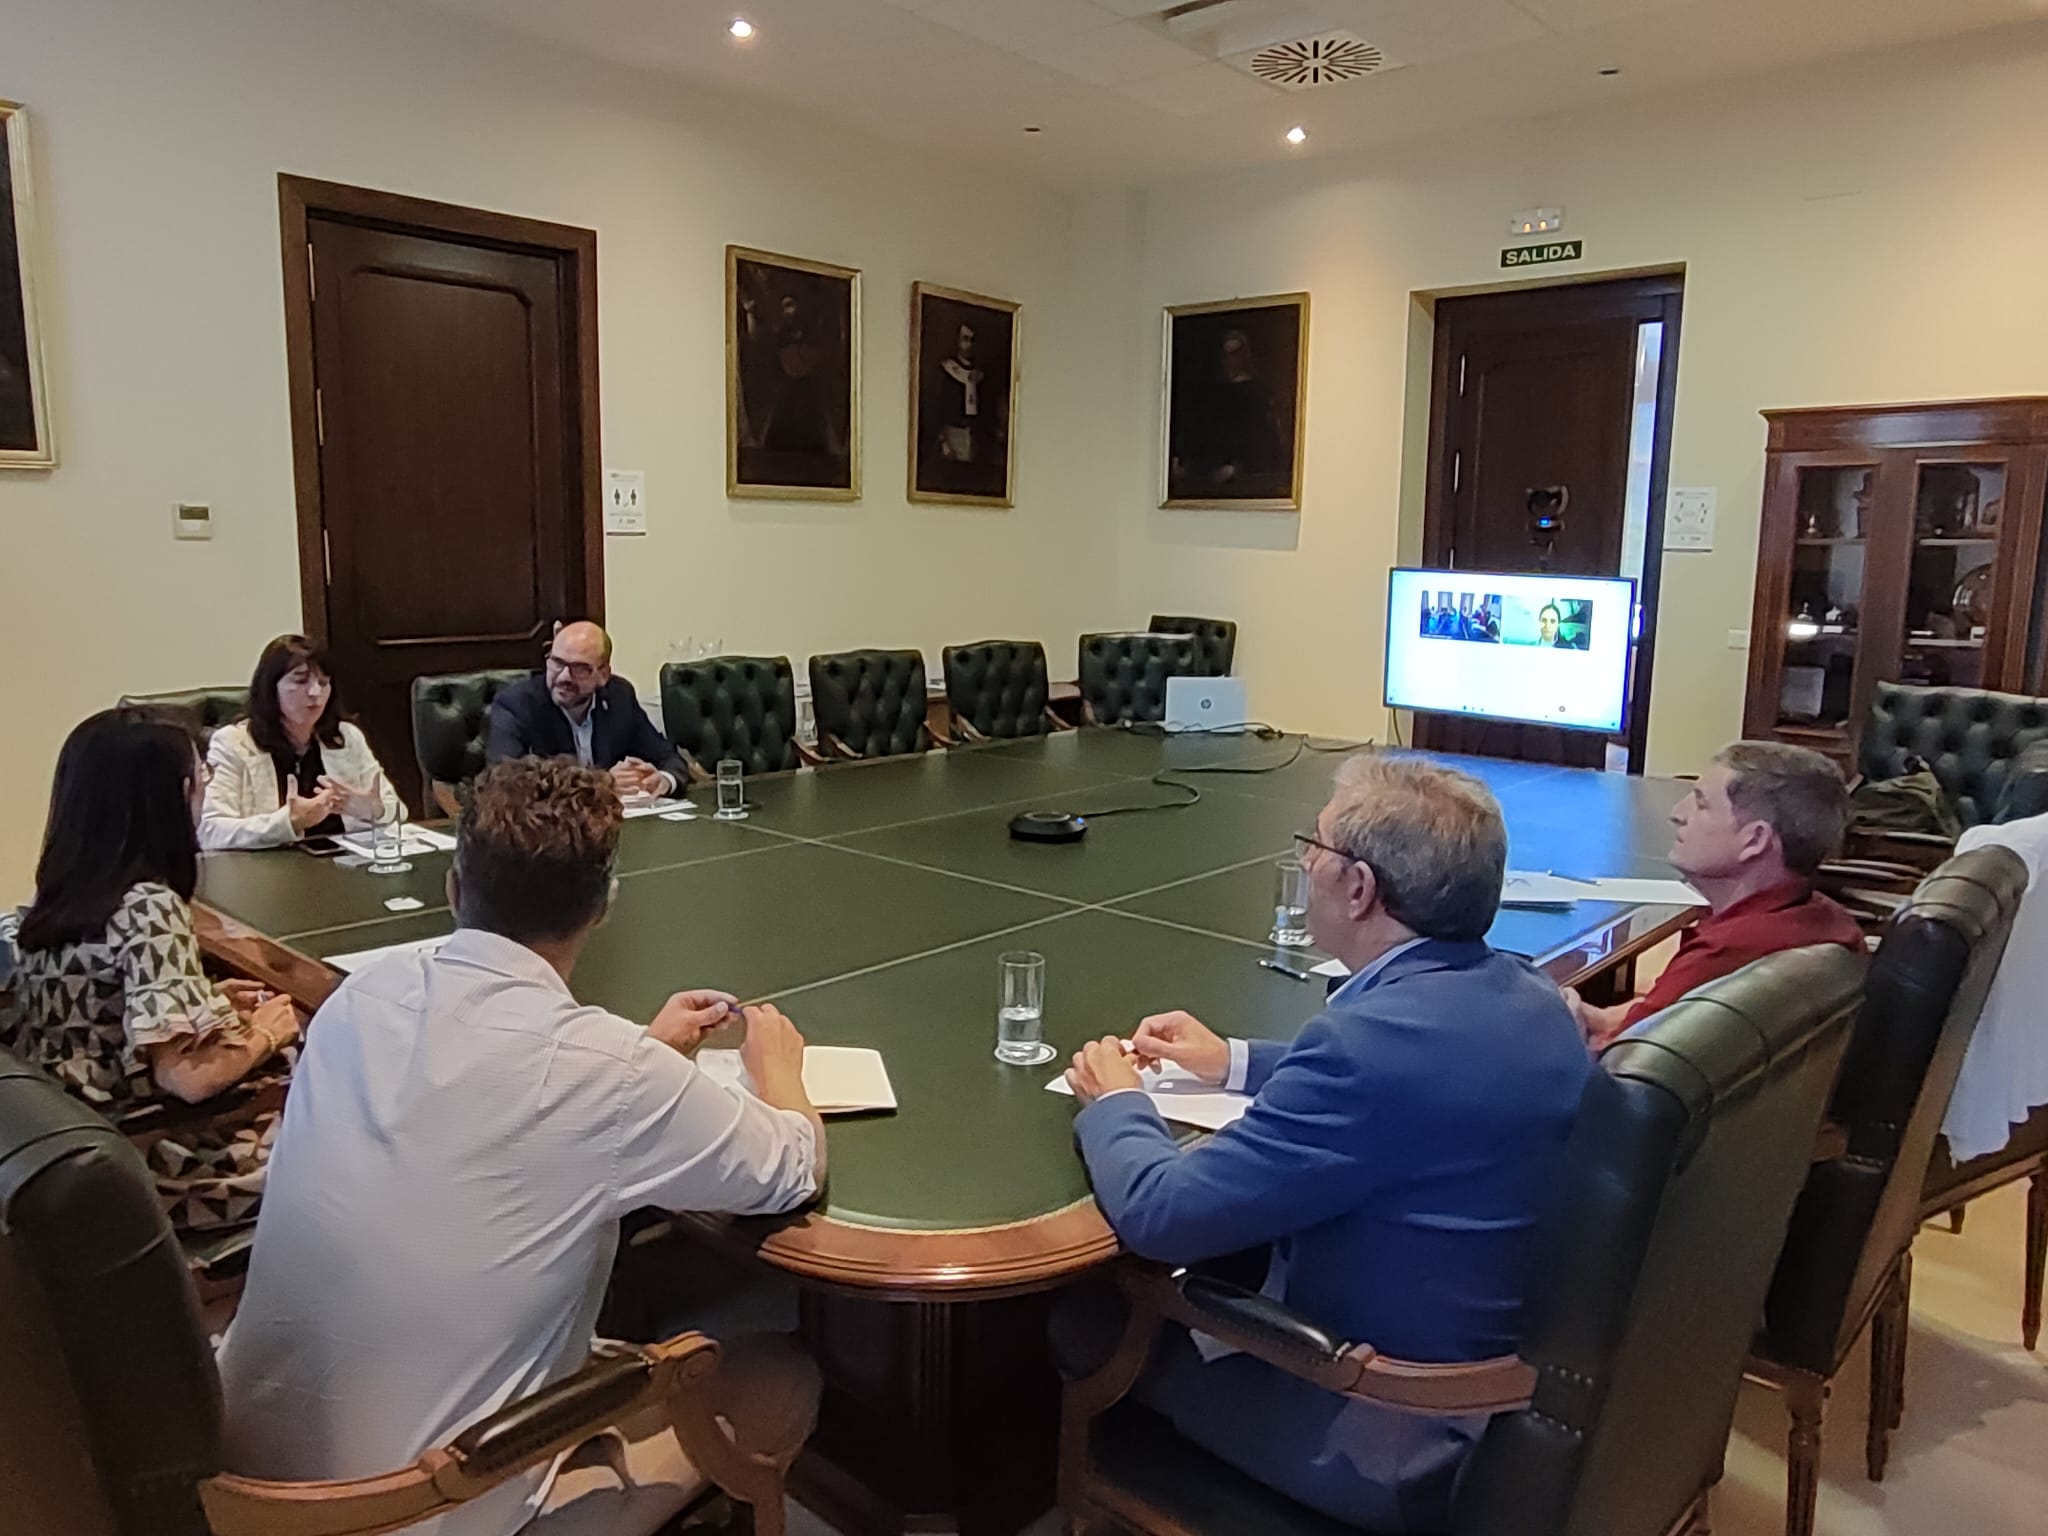 Nuevo Convenio de Colaboración Académica Establecido entre la Universidad de Rafael, UNRRAF, la Universidad de Córdoba y el Ayuntamiento de Carcabuey